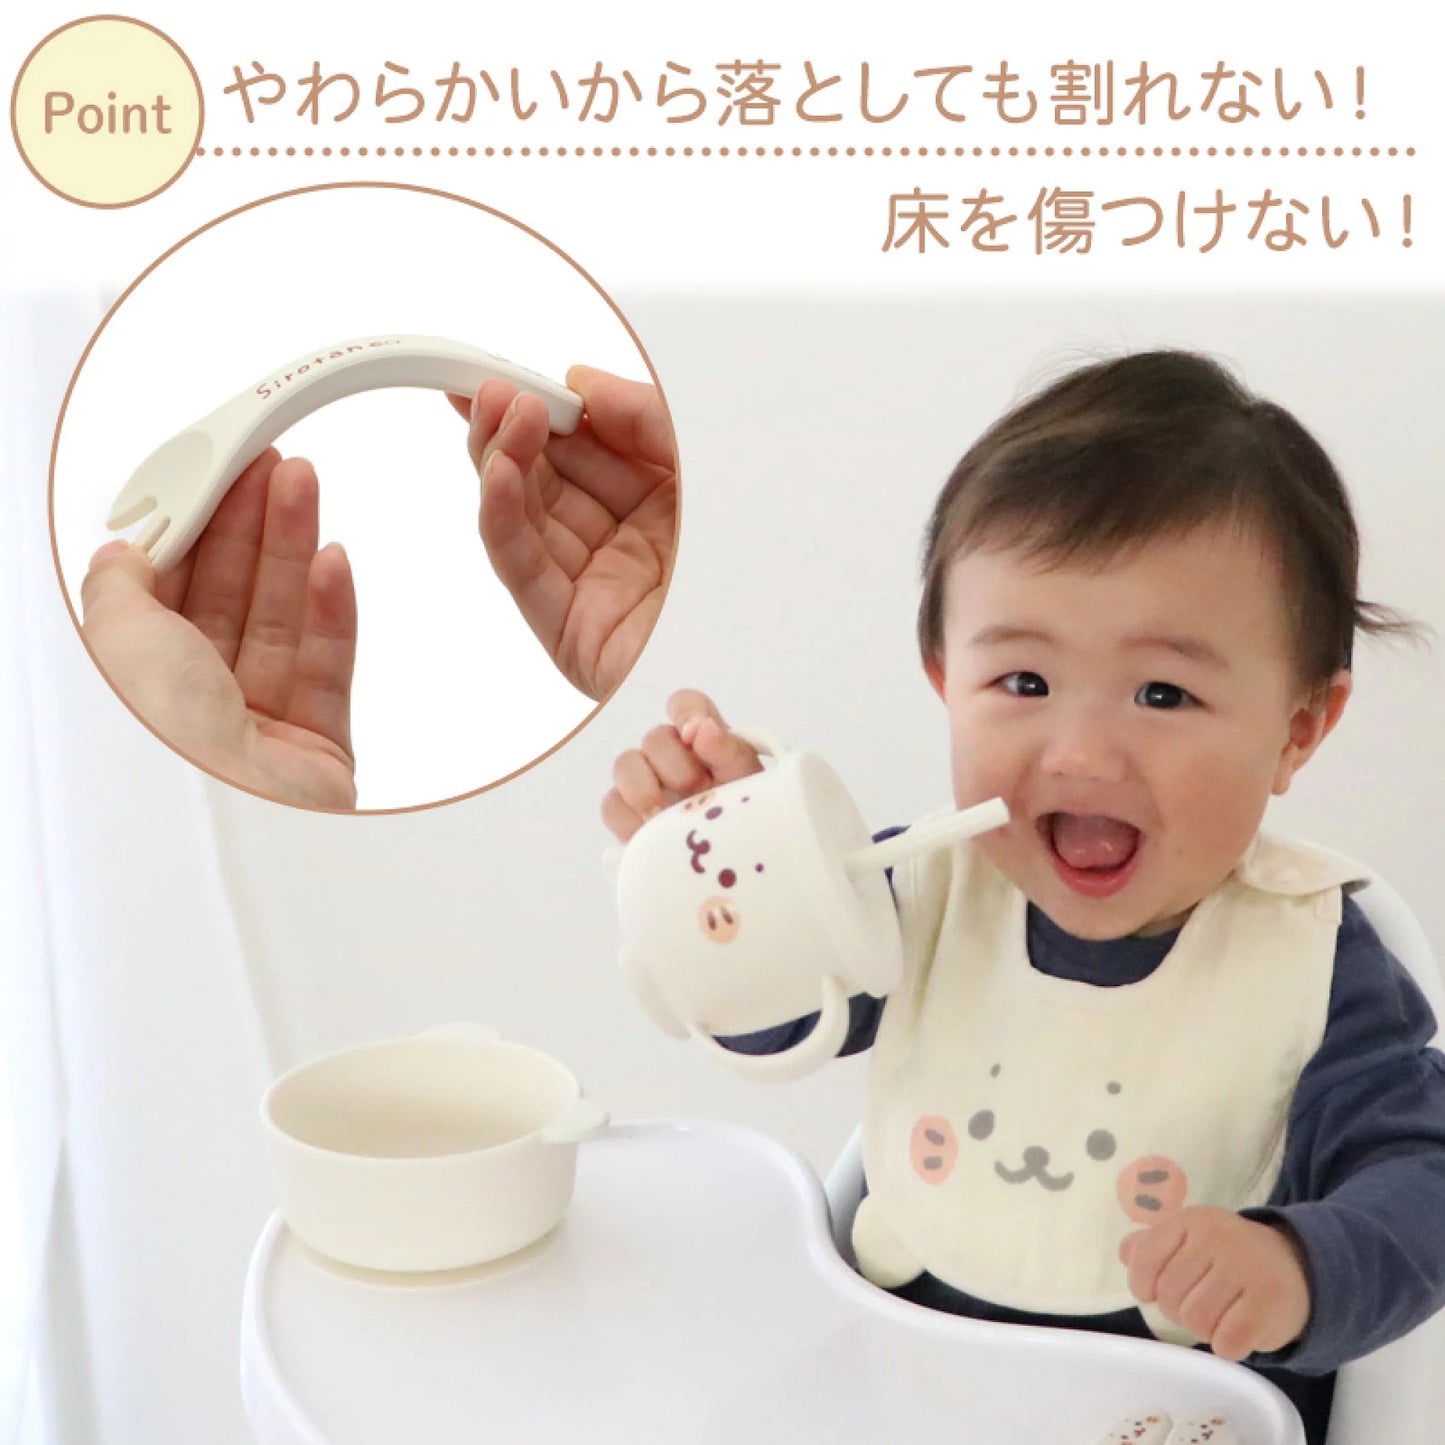 Sirotan 矽膠嬰兒餐具套裝